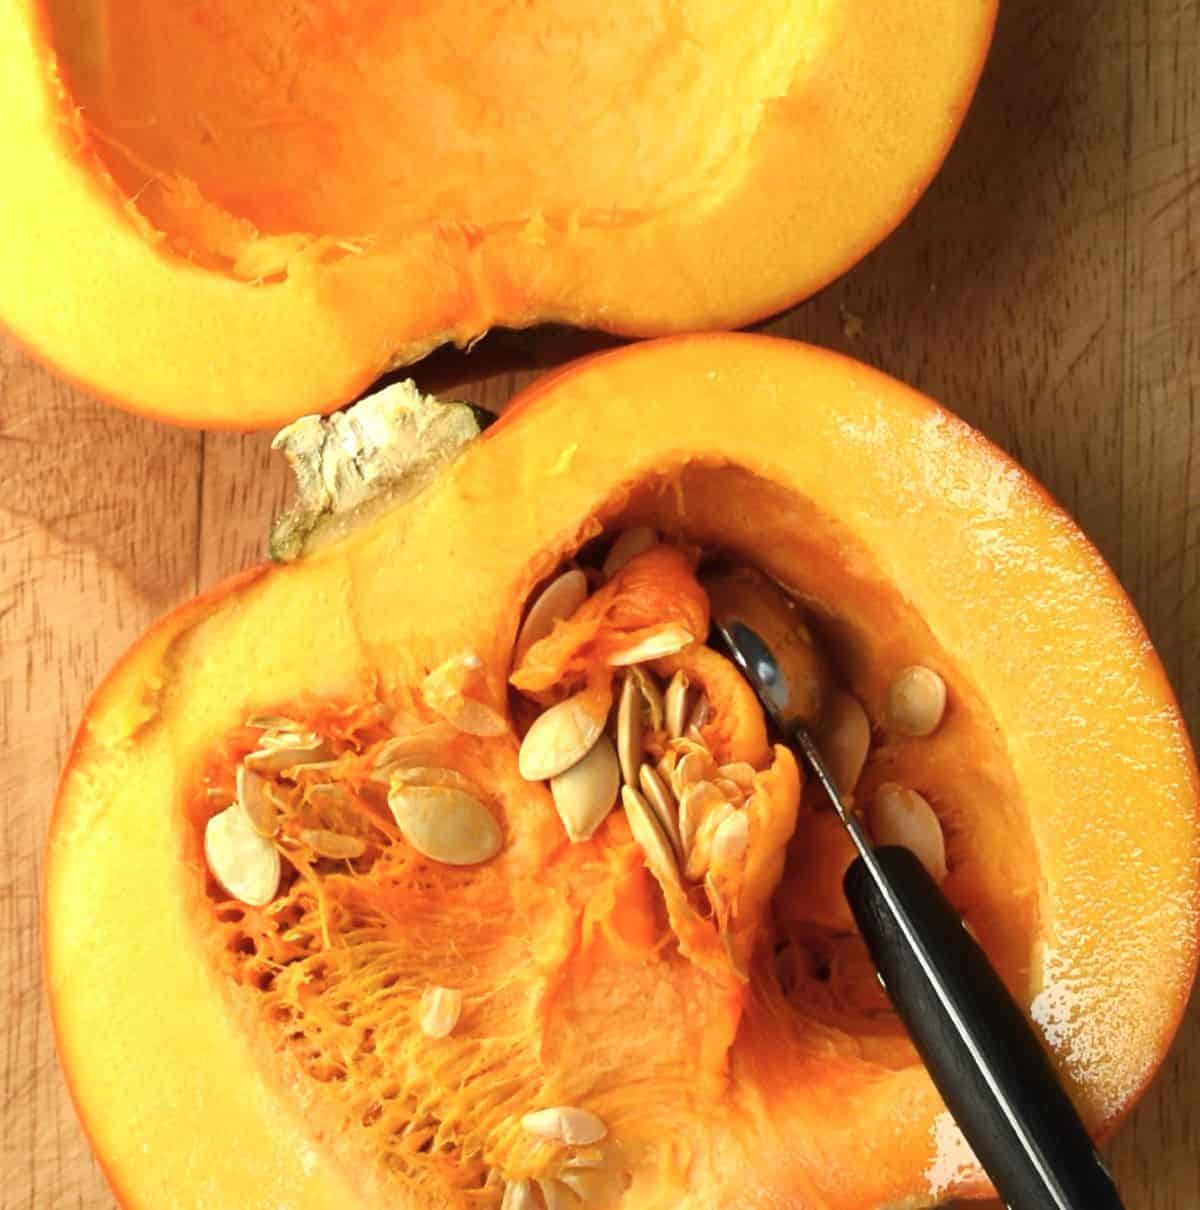 Top down view of removing pumpkin innards using melon baller.